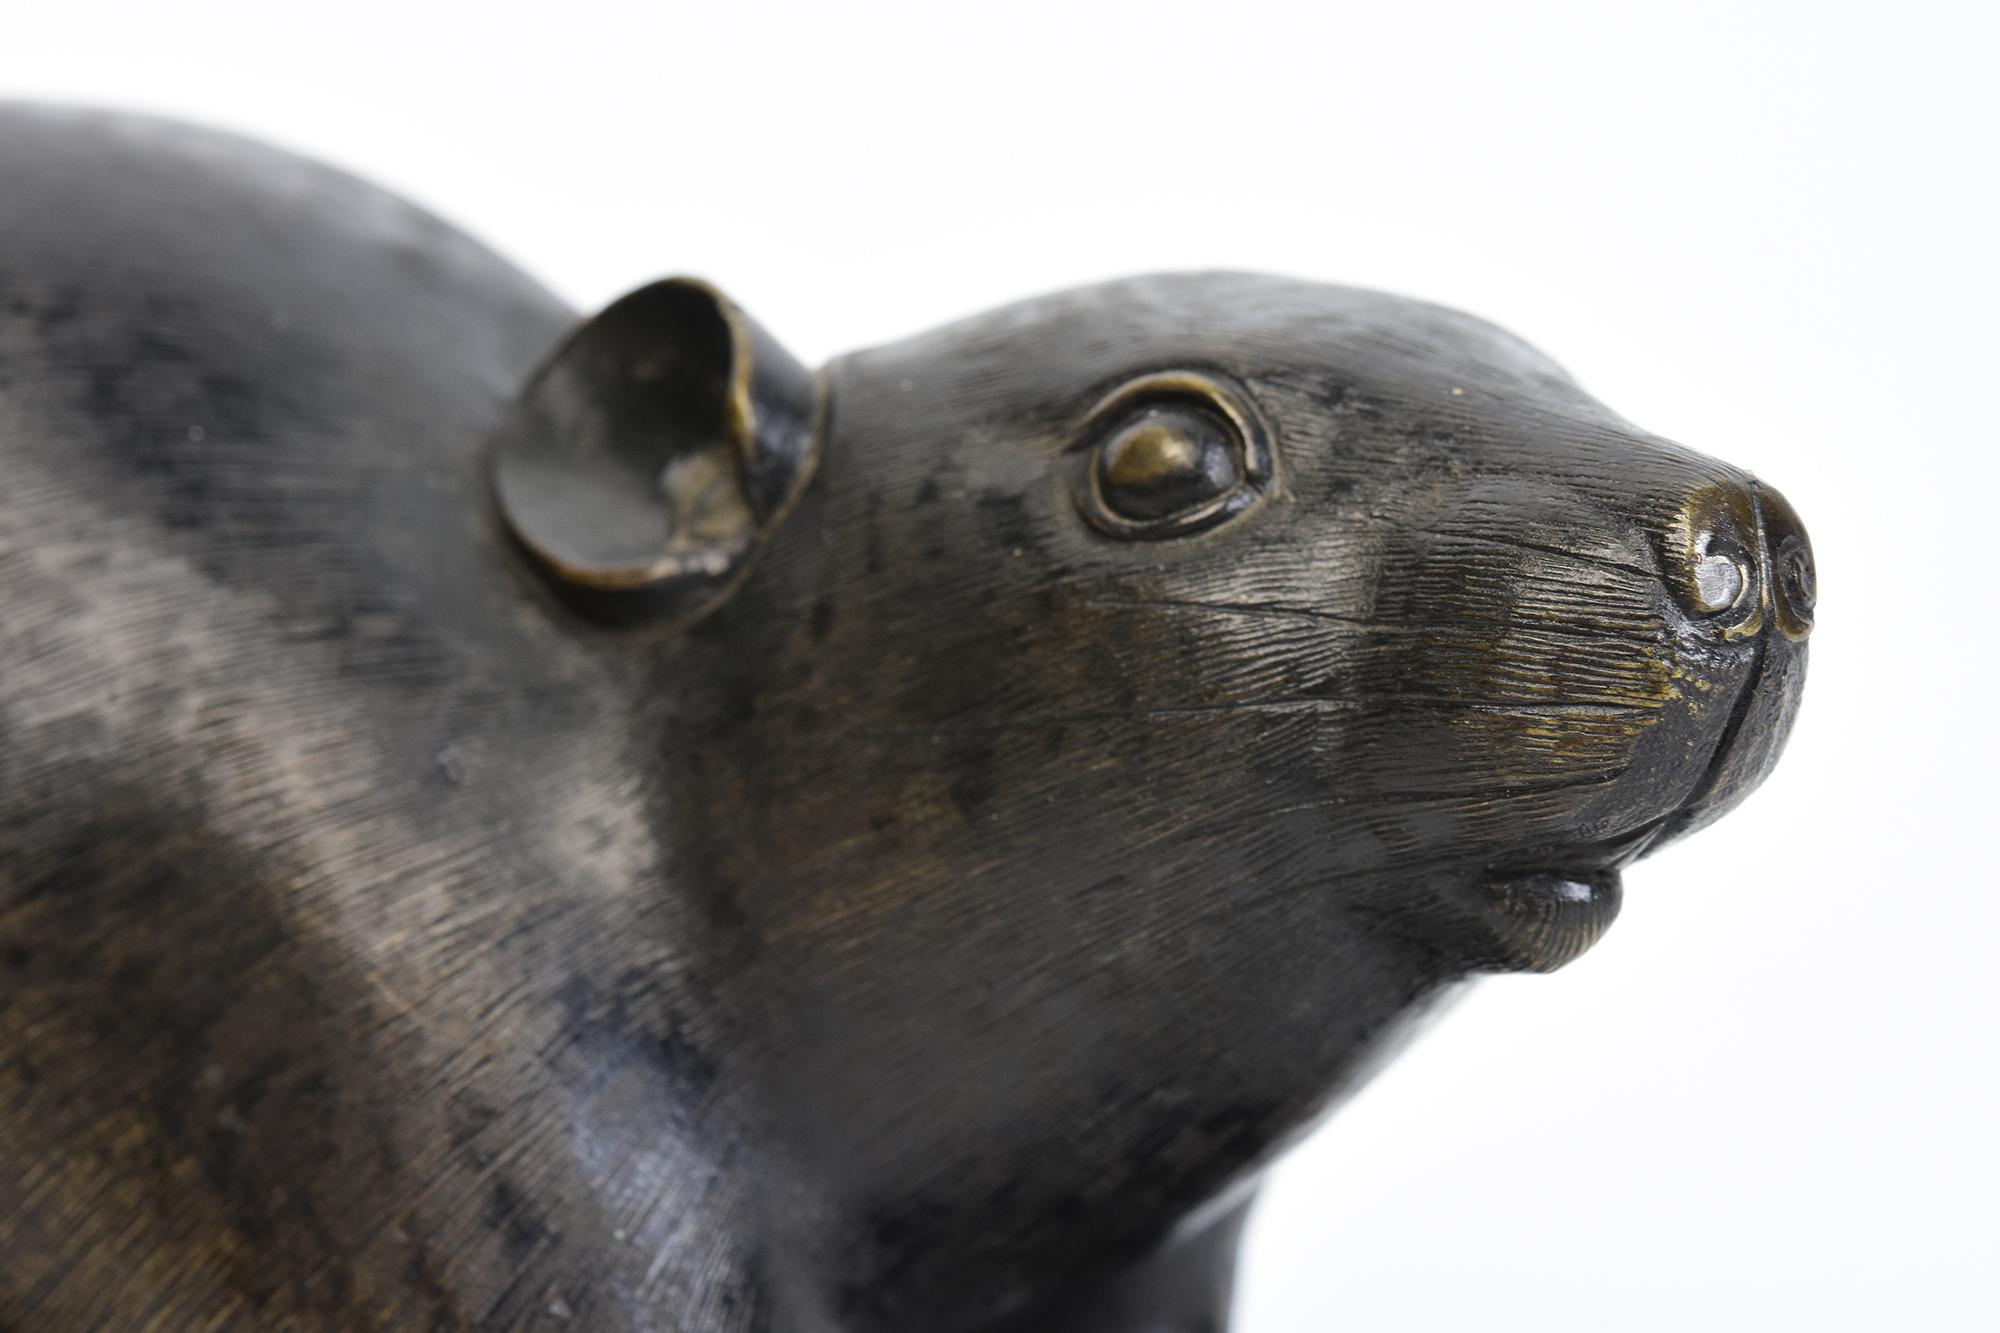 Japanische Bronze Tier Ratte / Maus hält eine Kastanie mit Künstler Zeichen.
Die Signatur des Künstlers befindet sich auf dem letzten Foto.

Alter: Japan, Meiji-Zeit, 19. Jahrhundert
Größe: Länge 18 C.M. / Breite 8.5 C.M. / Höhe 9 C.M.
Zustand: